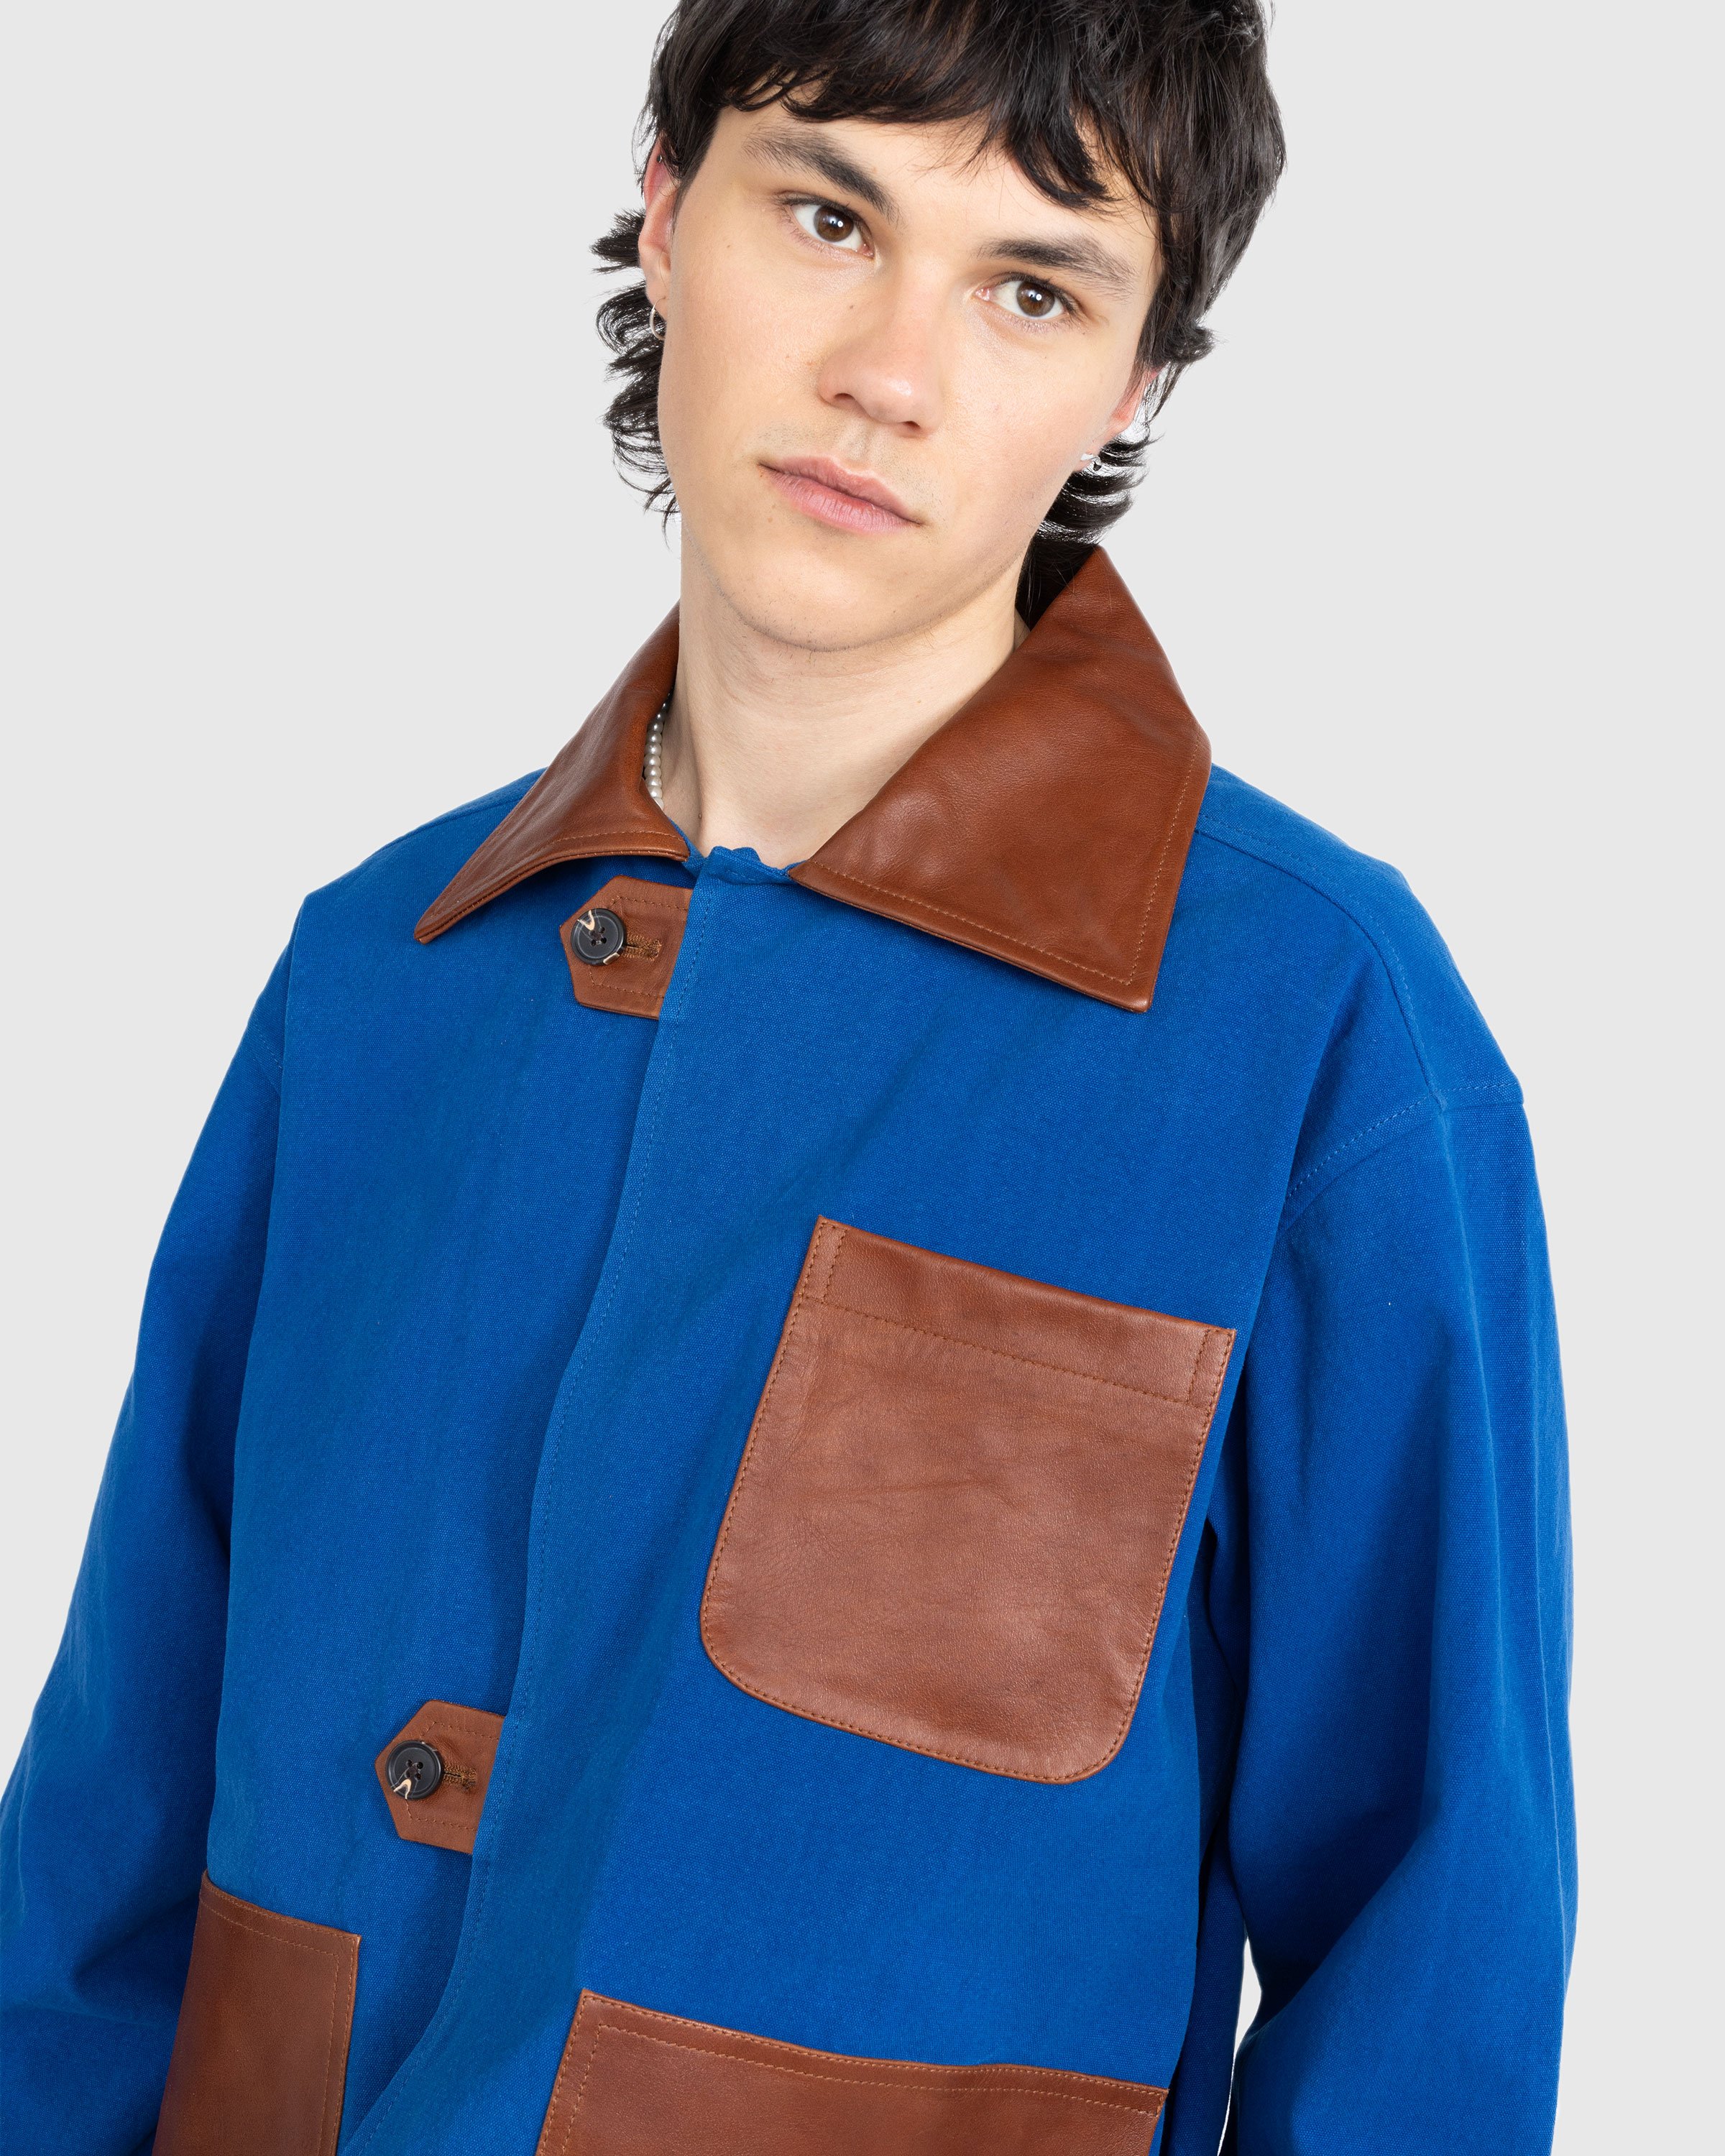 Bode - Leather Tab Jacket - Clothing - Blue - Image 3